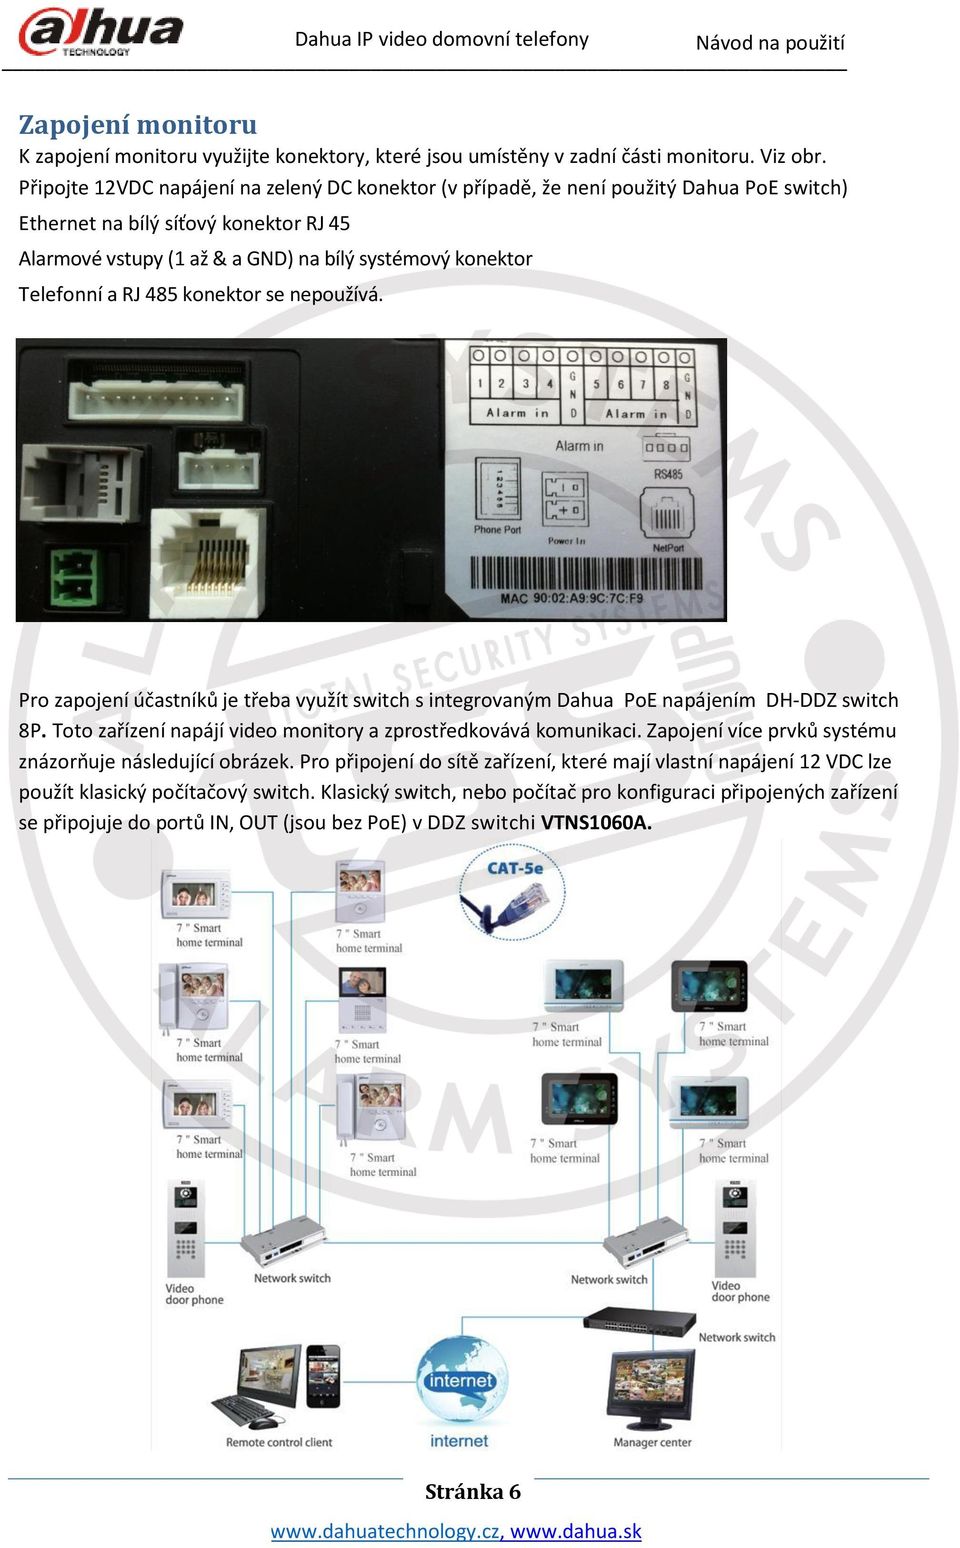 a RJ 485 konektor se nepoužívá. Pro zapojení účastníků je třeba využít switch s integrovaným Dahua PoE napájením DH-DDZ switch 8P. Toto zařízení napájí video monitory a zprostředkovává komunikaci.